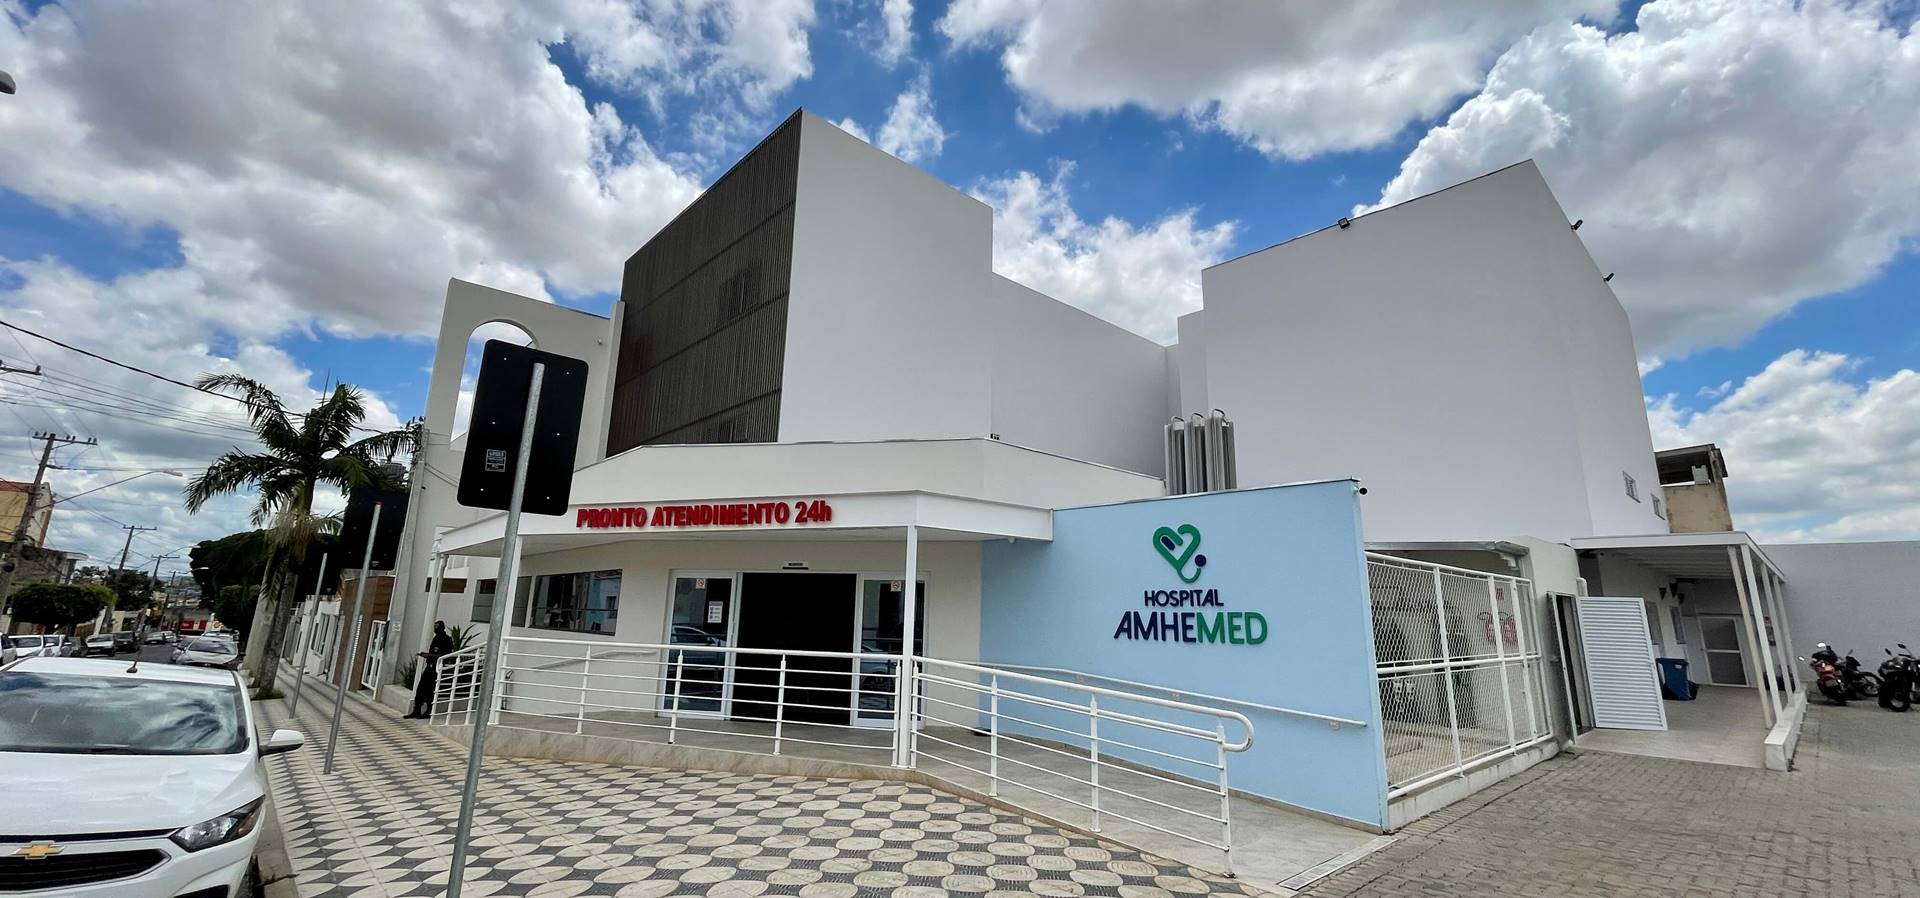 Hospital Amhemed de Sorocaba Fachada - Convenio de saude online Solicite Cotação Orçamento